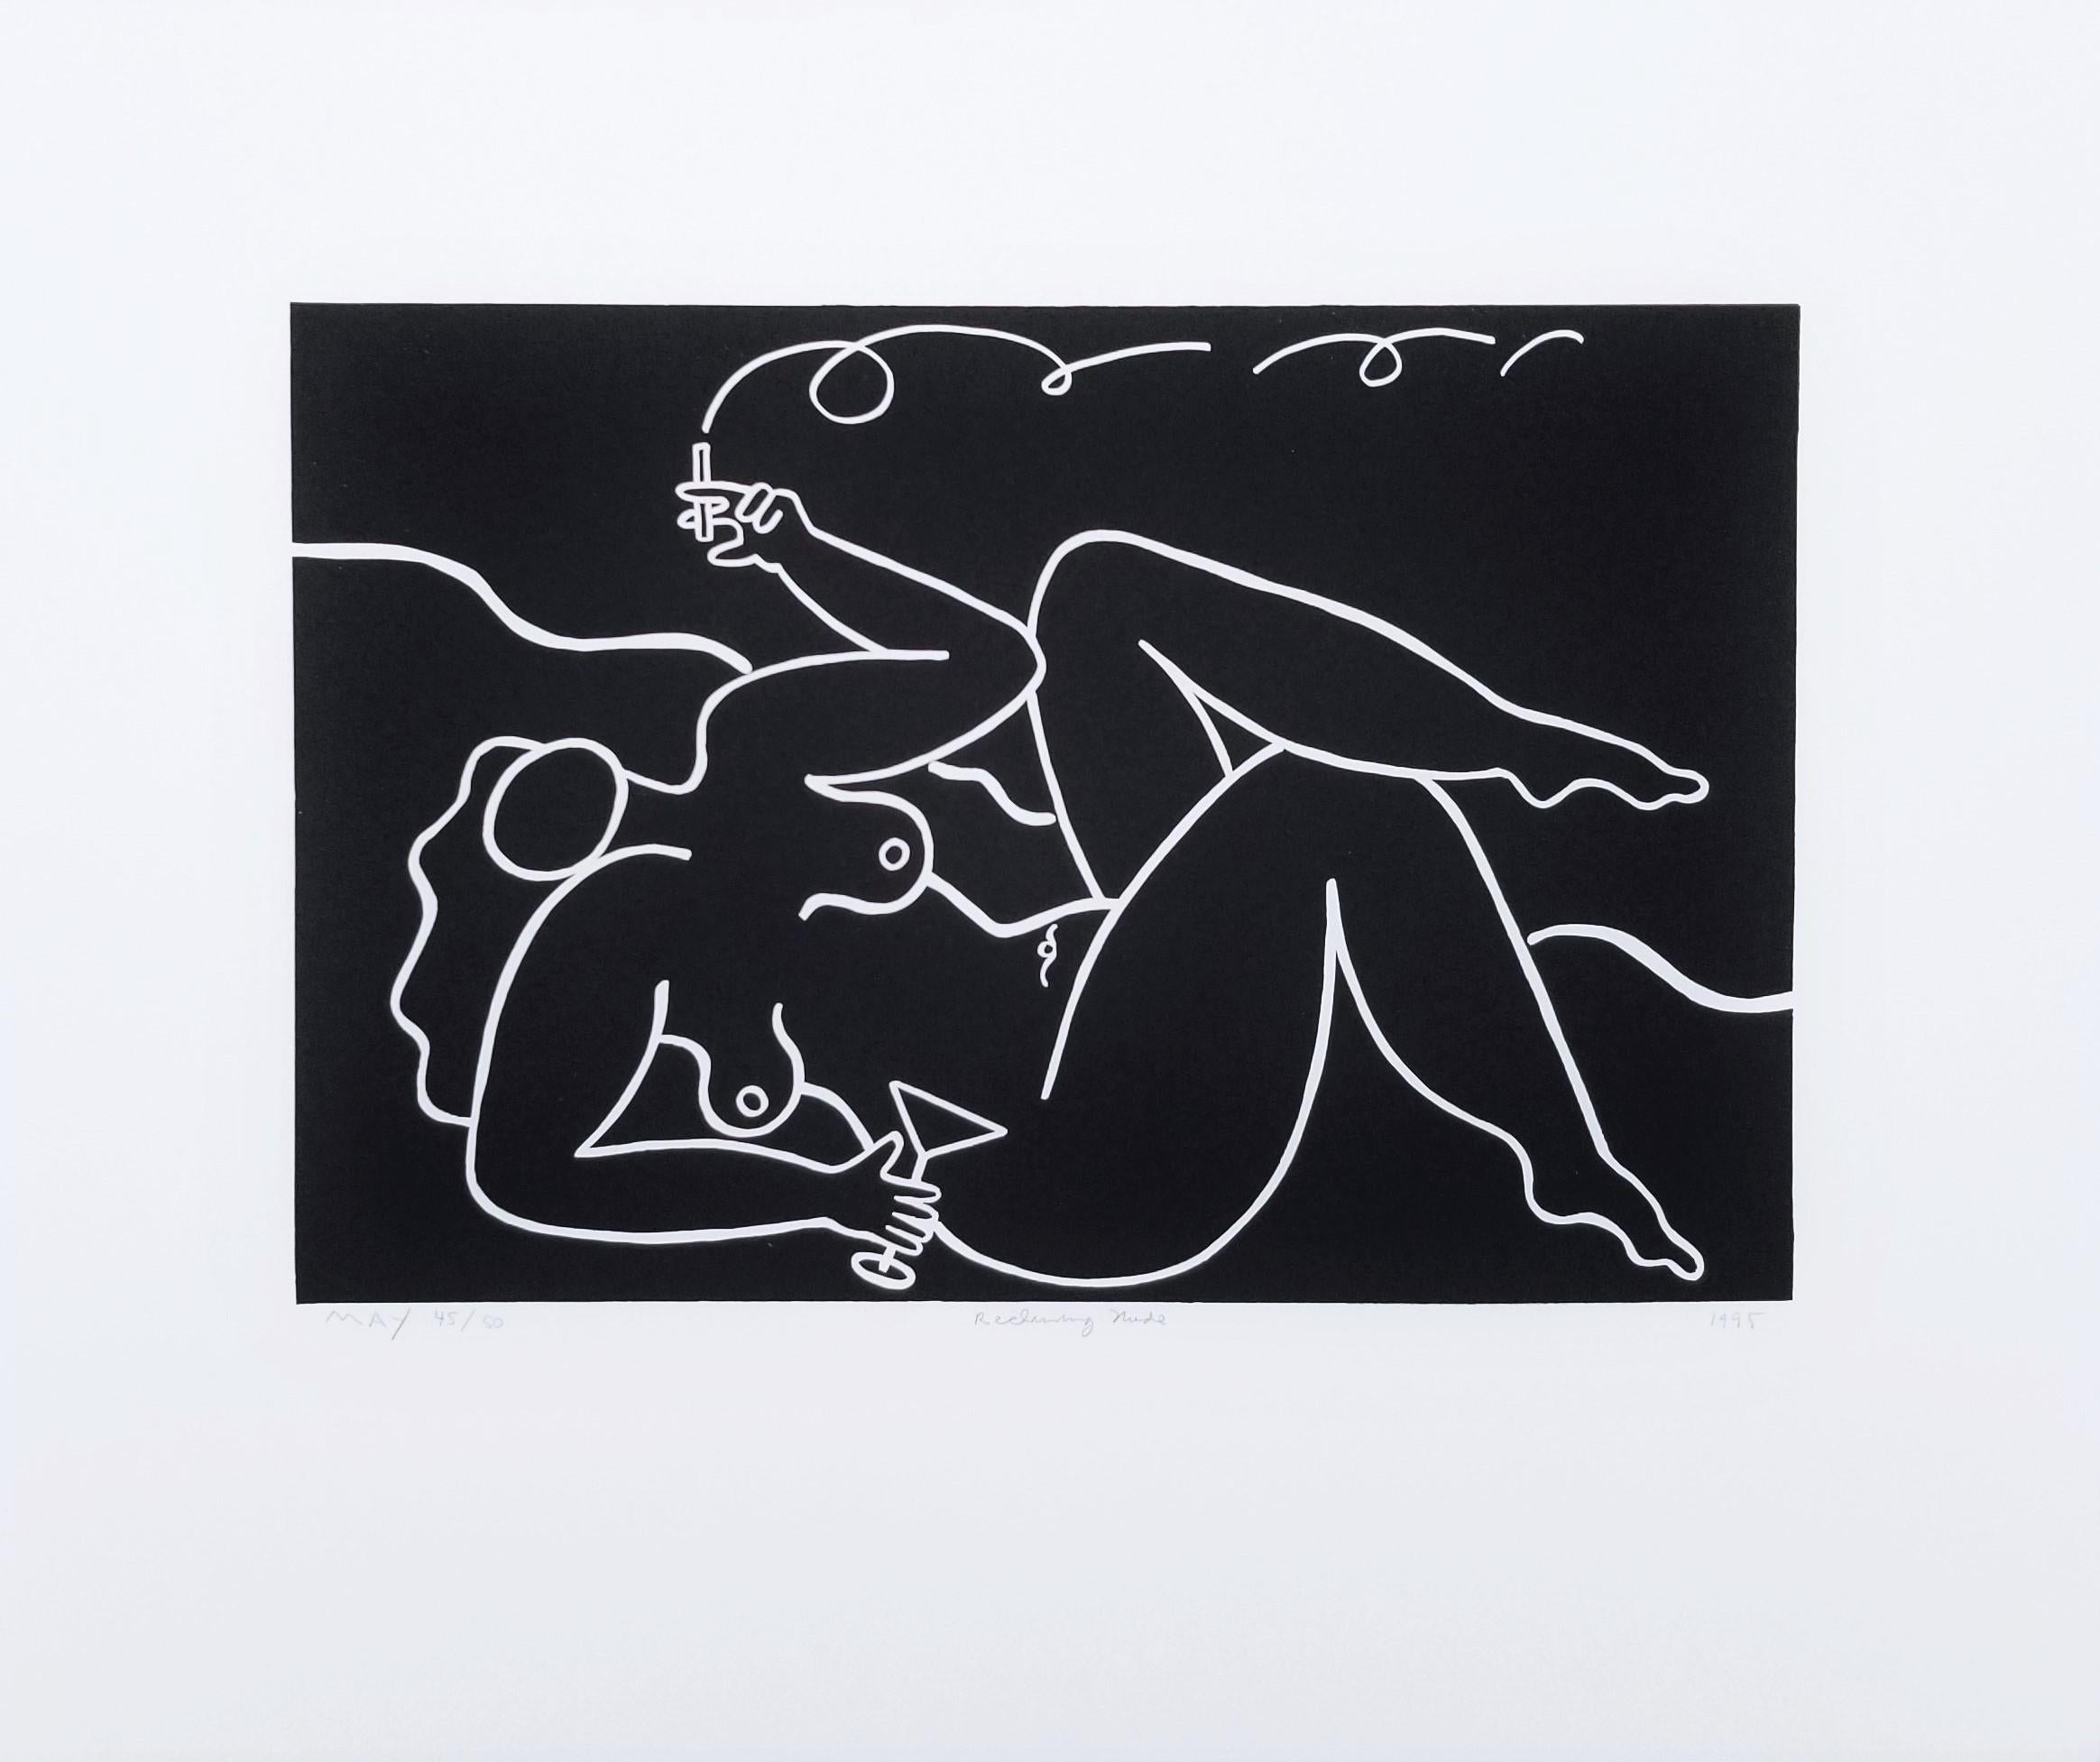 Reclining Nude (Black) /// Contemporary Pop Art Screenprint Figurative Alcohol  - Print by Dan May